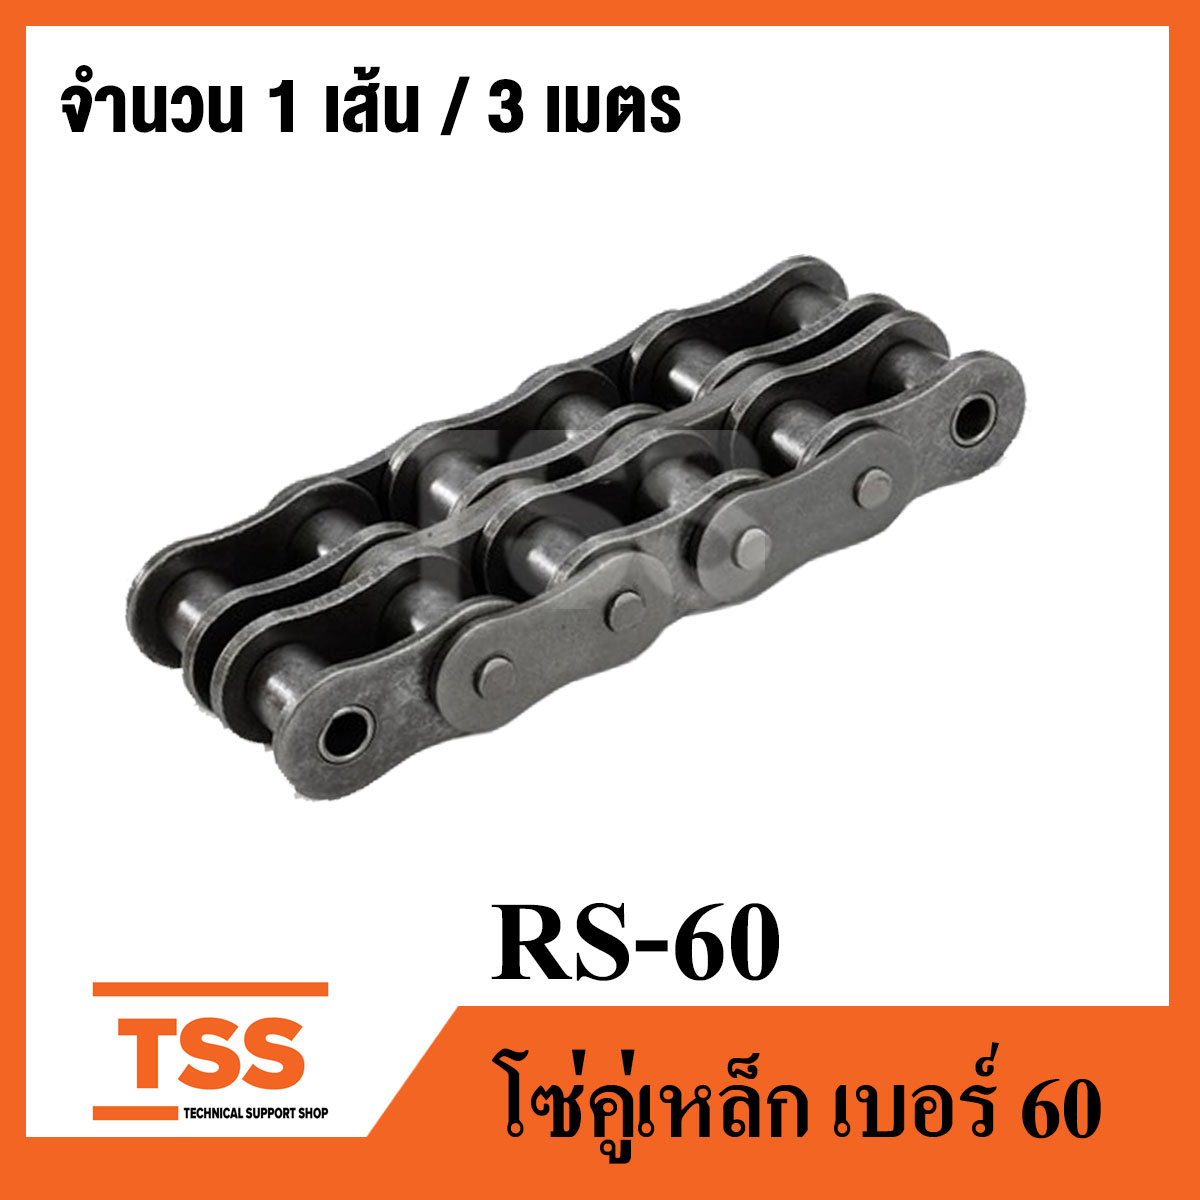 RS60 โซ่คู่ ส่งกำลัง เบอร์ 60 (Transmission Roller chain) (3 เมตร / 1 กล่อง) โซ่อุตสาหกรรม เบอร์ 60